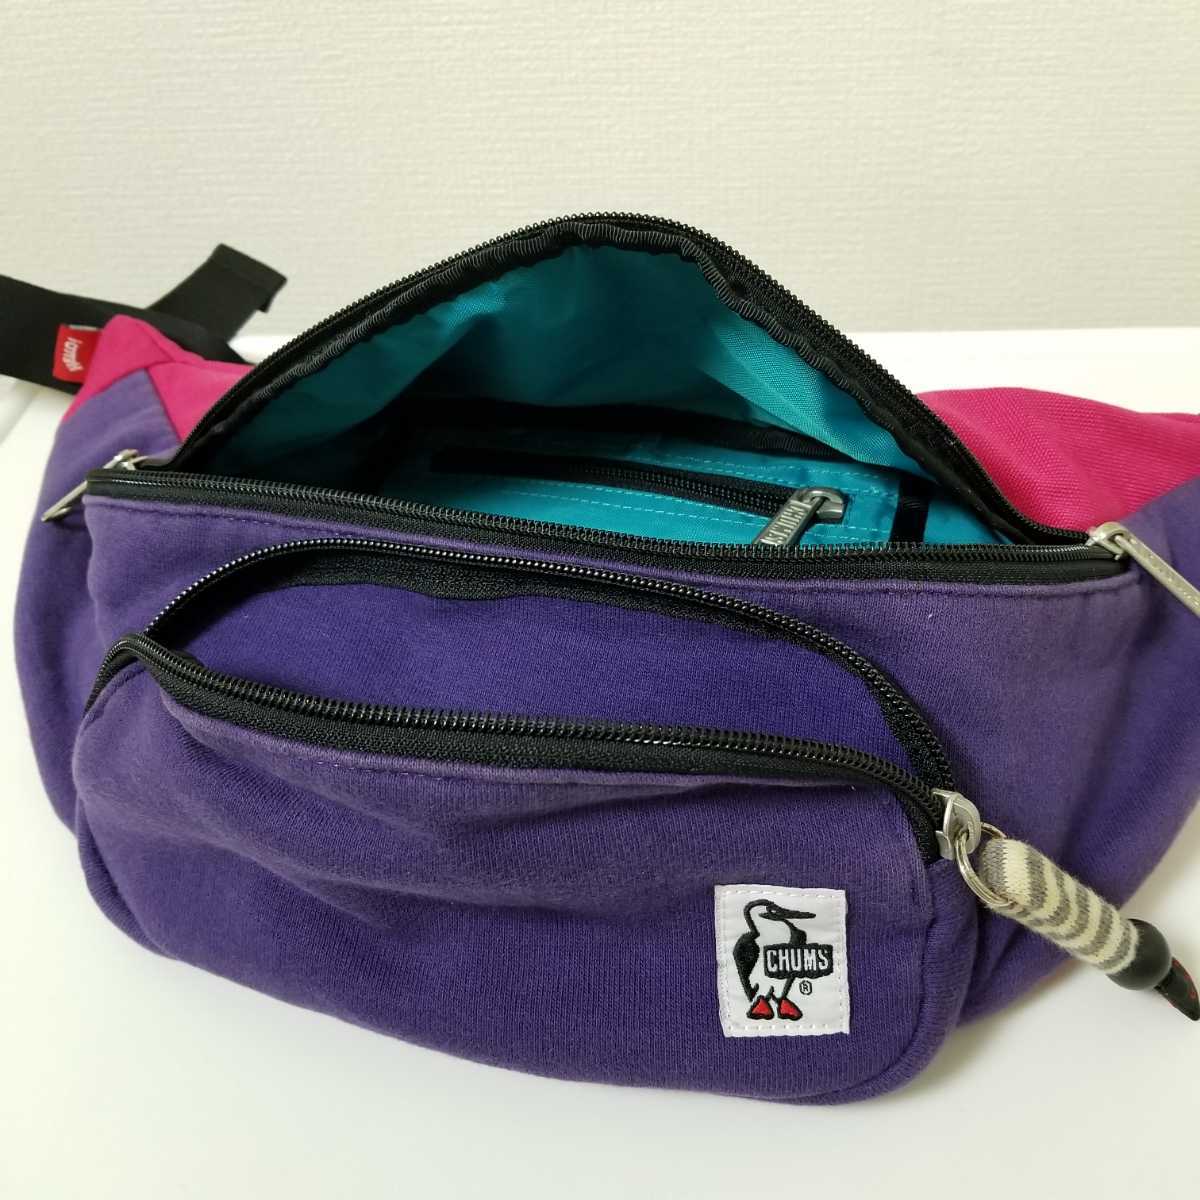  Chums CHUMS сумка "body" поясная сумка сумка-пояс унисекс модель розовый × лиловый хлопок × нейлон 03B1402